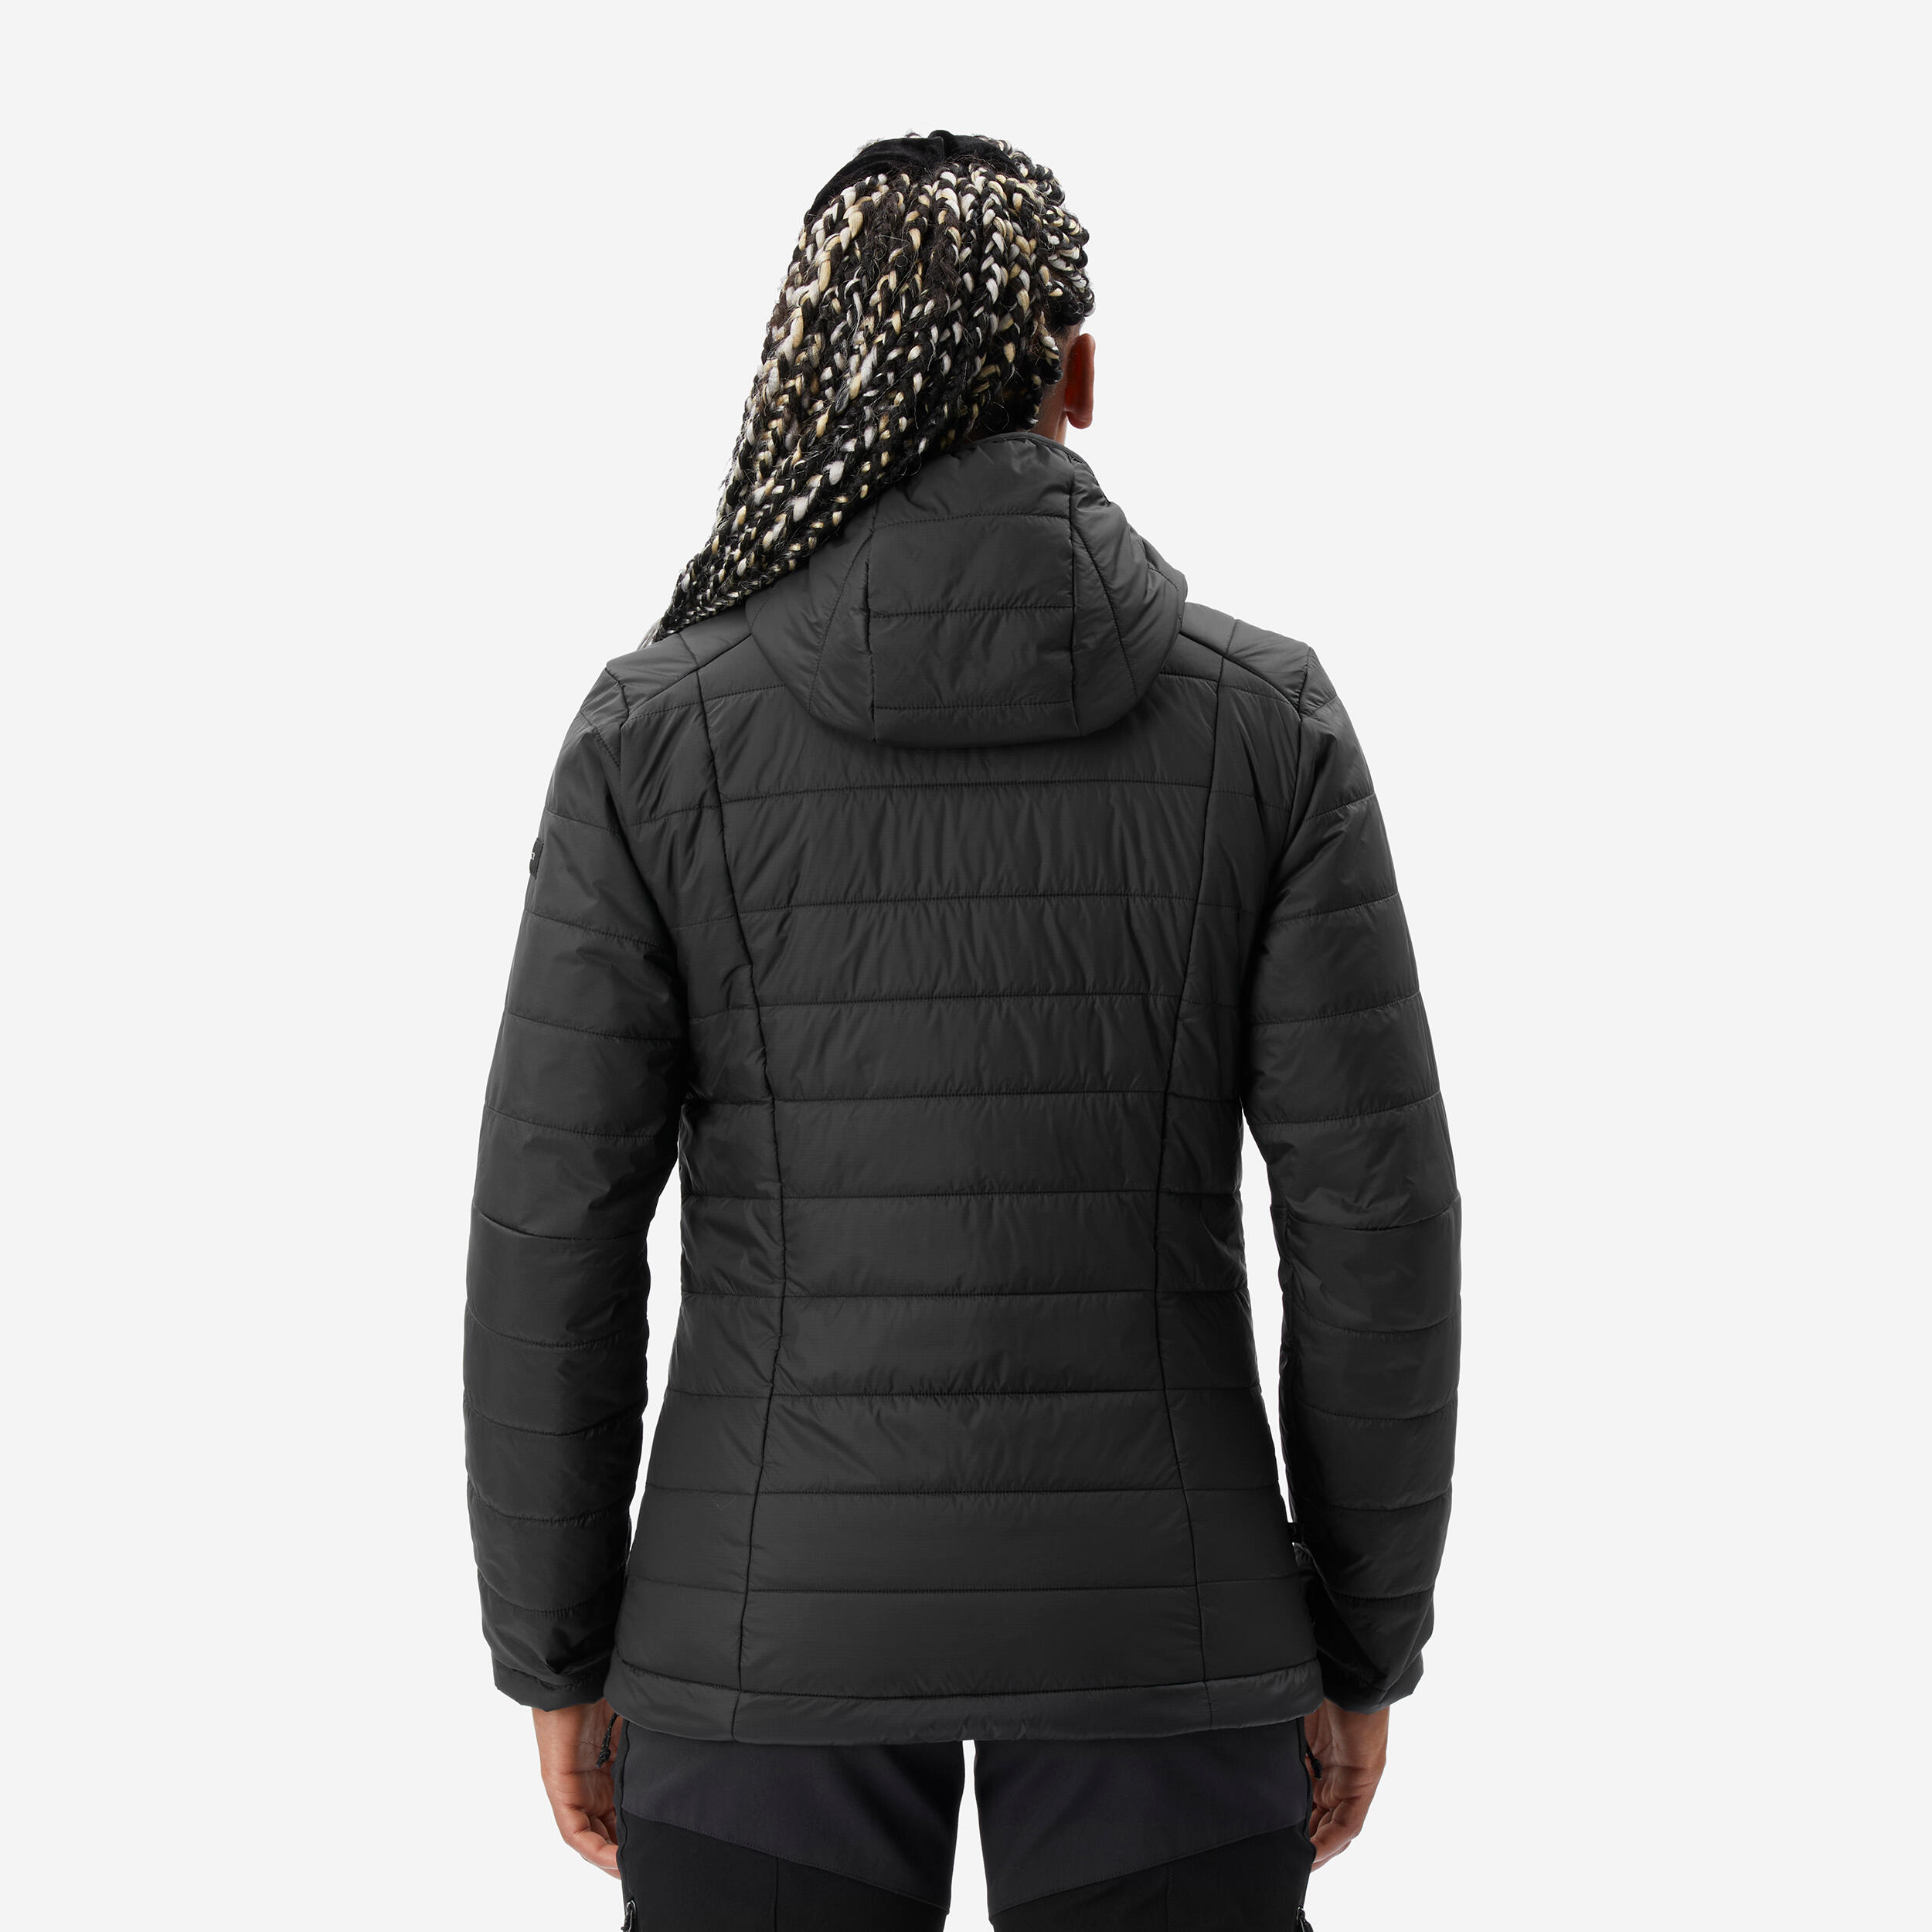 Manteau d'hiver femme – MT 100 - FORCLAZ